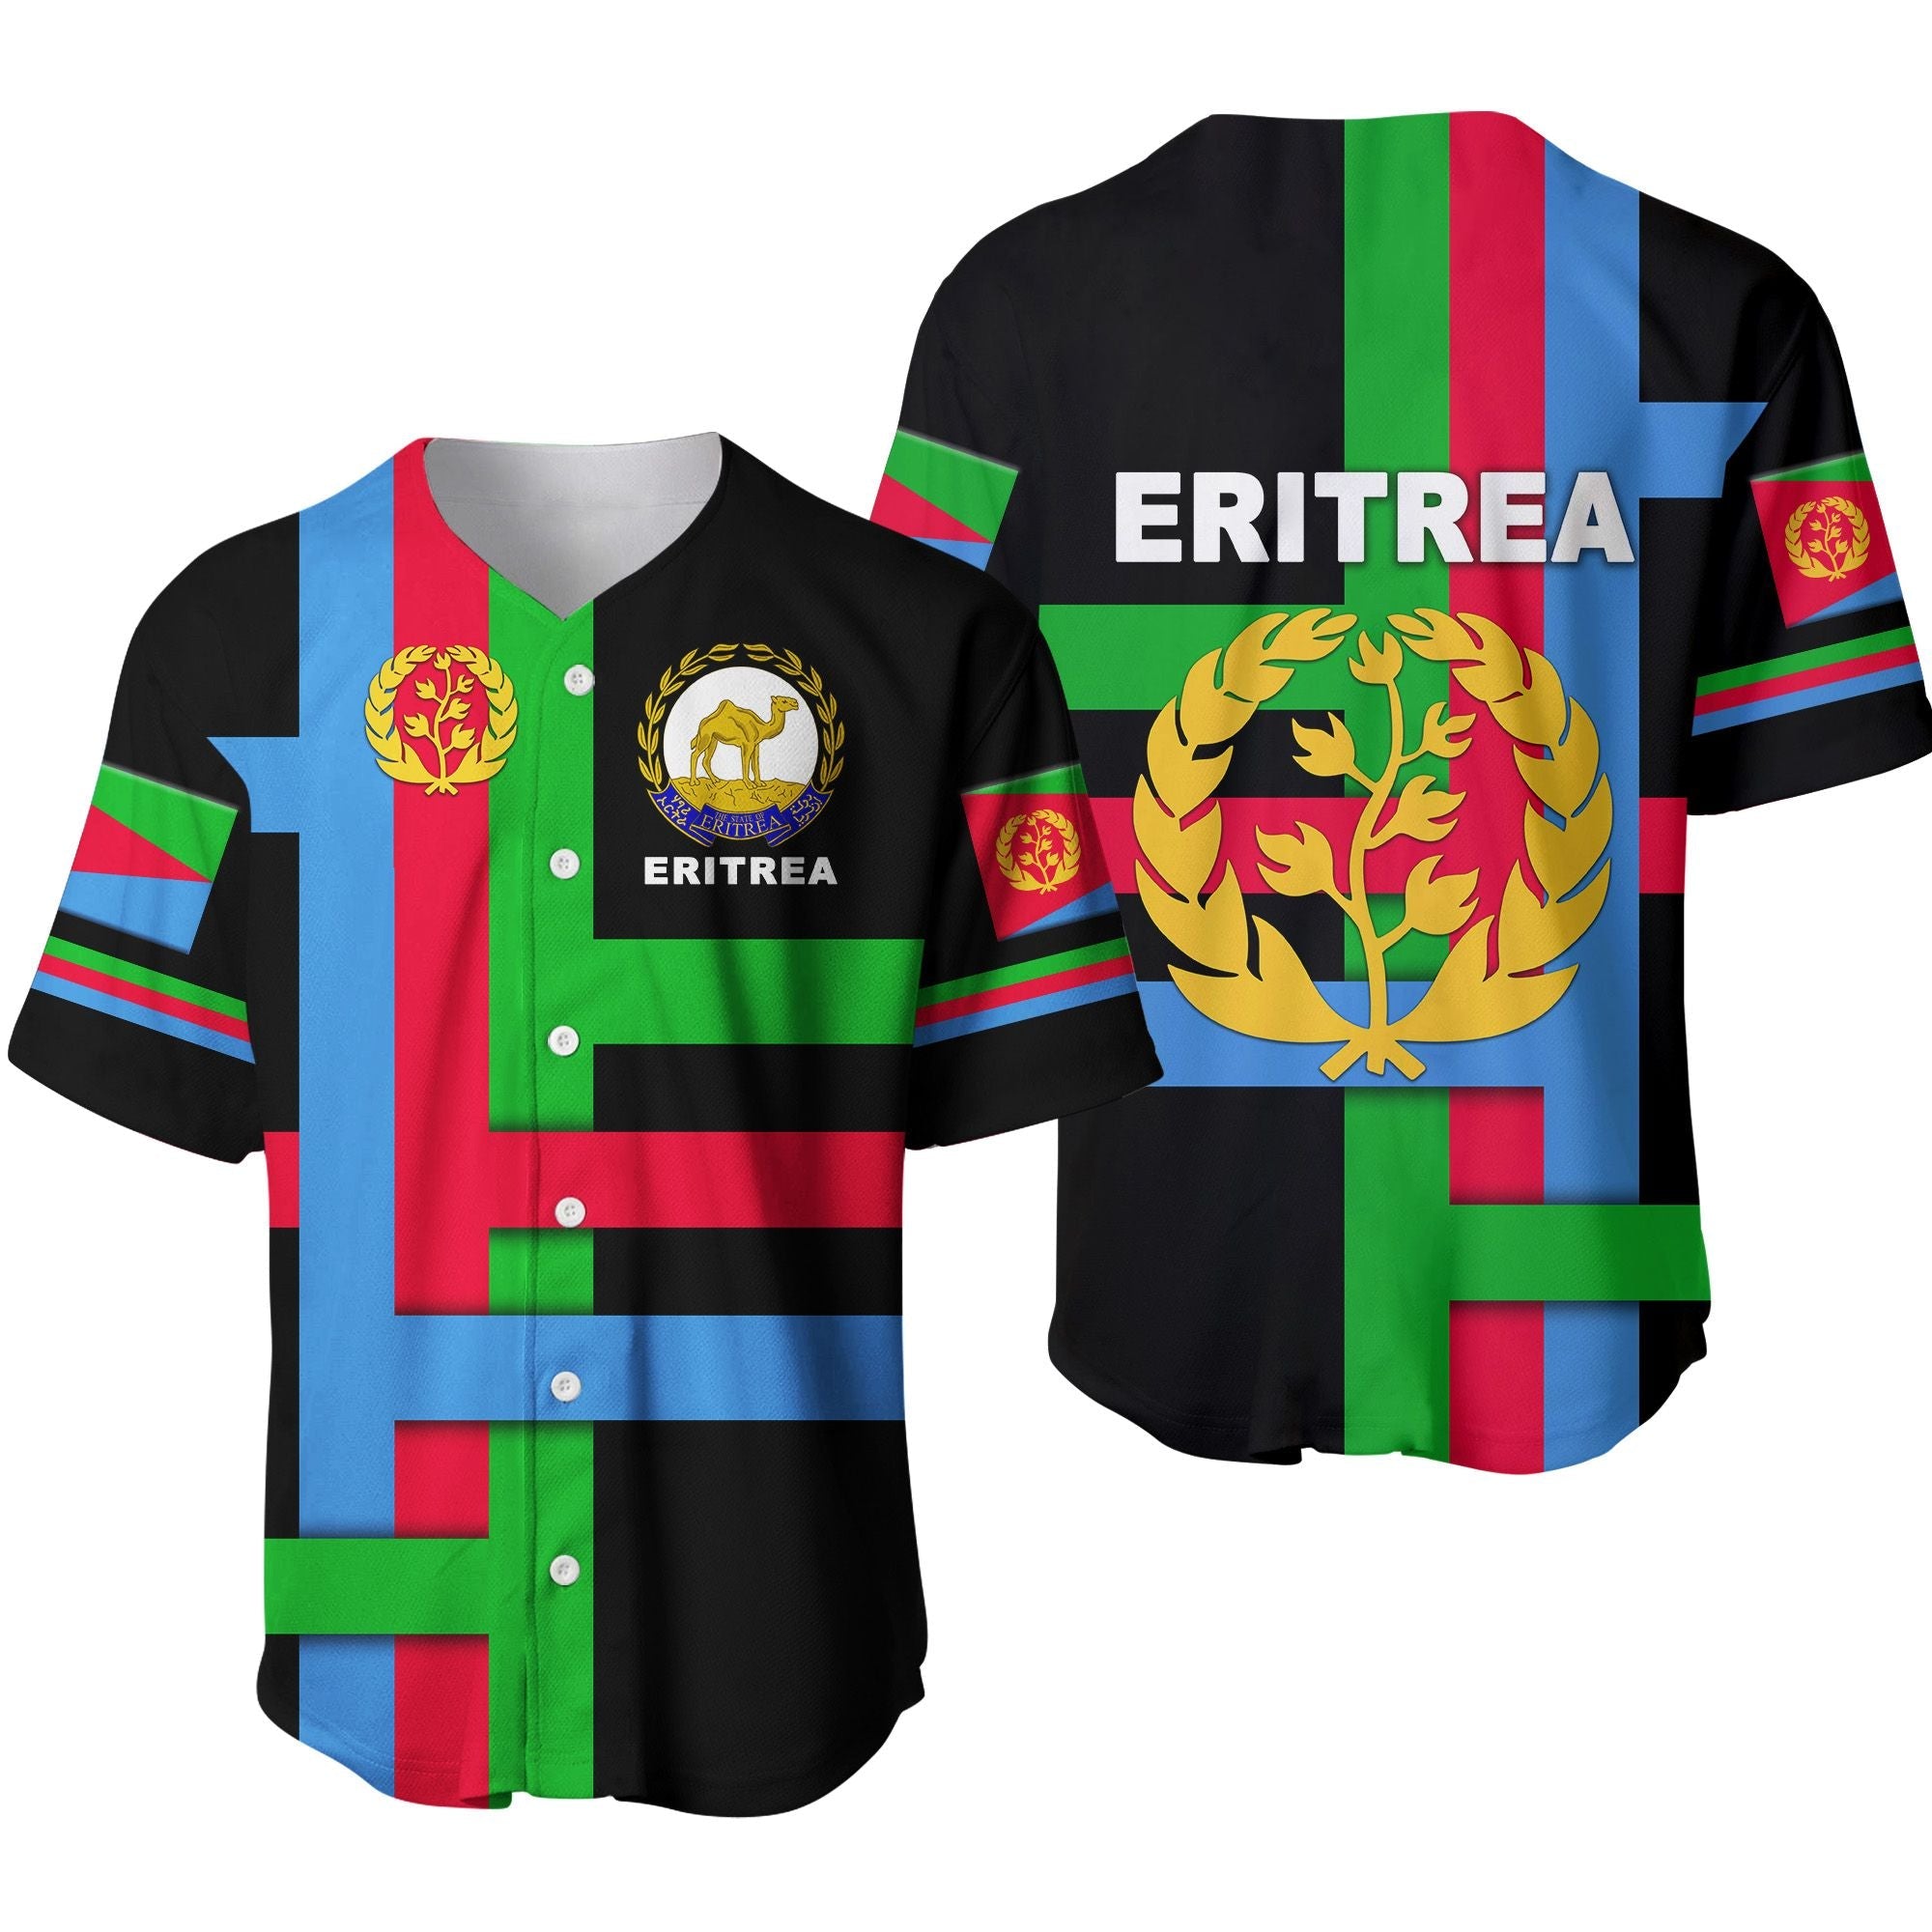 eritrea-baseball-jersey-flag-vibes-black